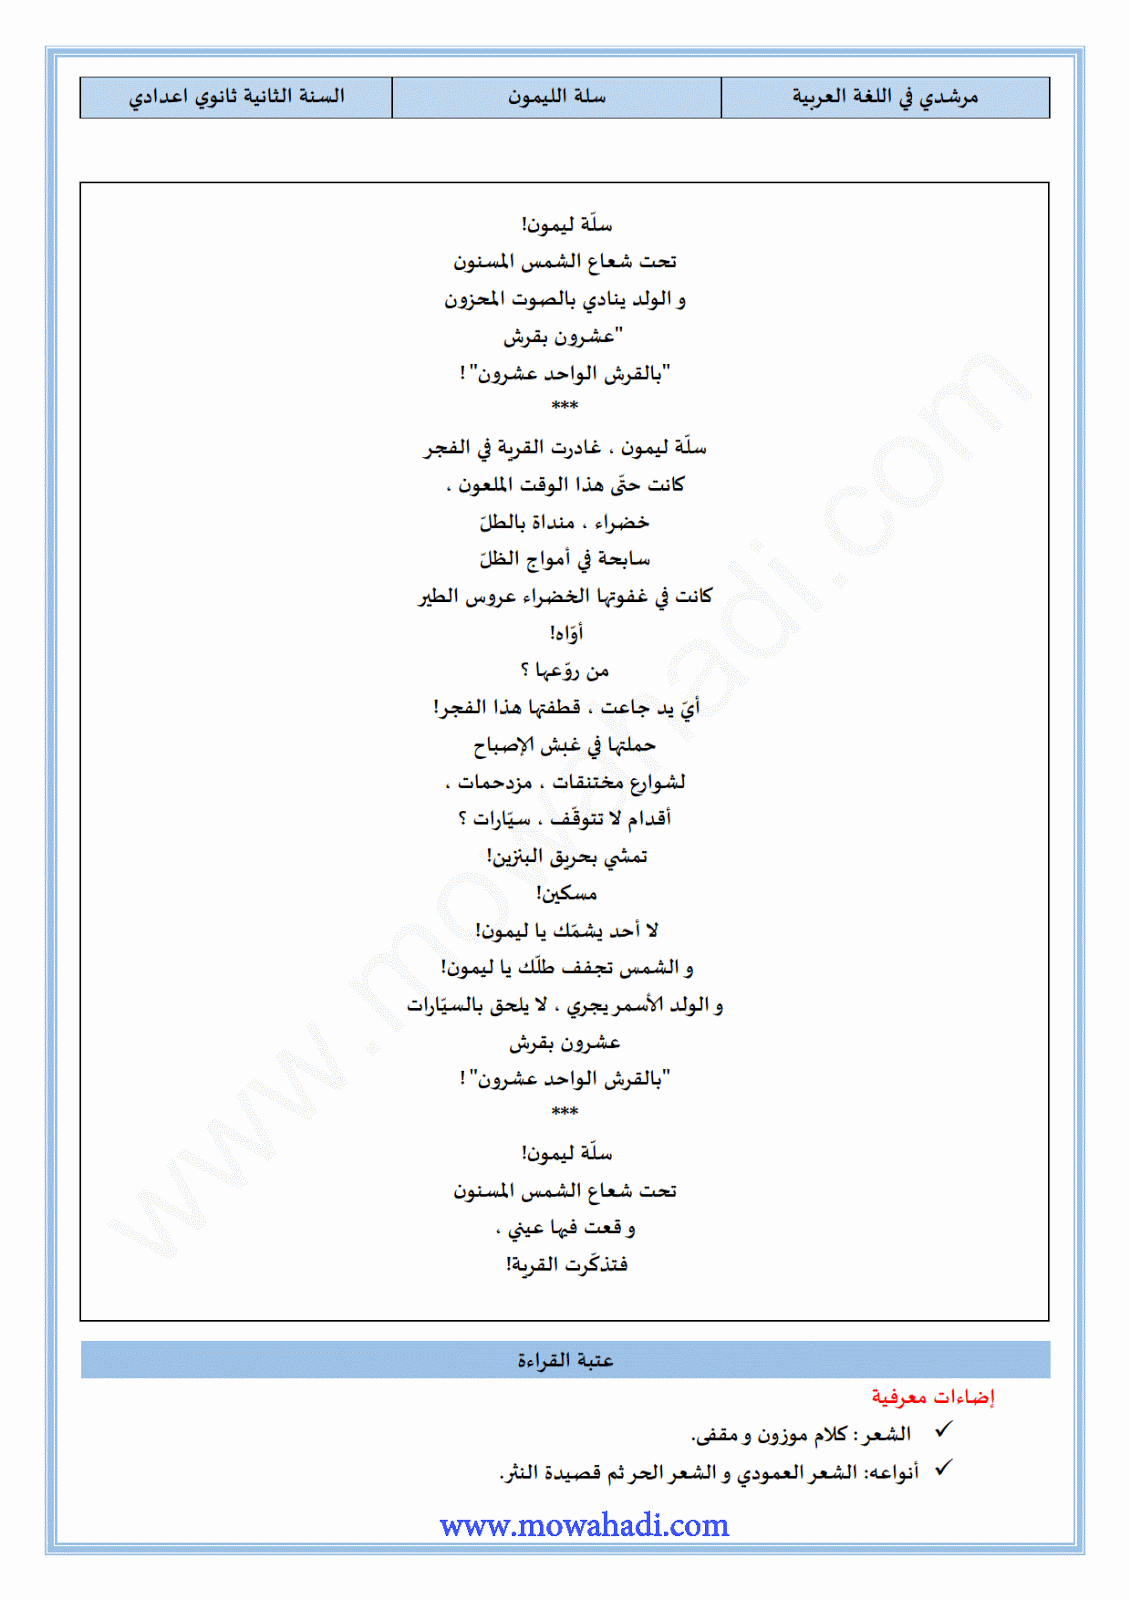 تحضير النص القرائي سلة الليمون للسنة الثانية عدادي في مادة اللغة العربية